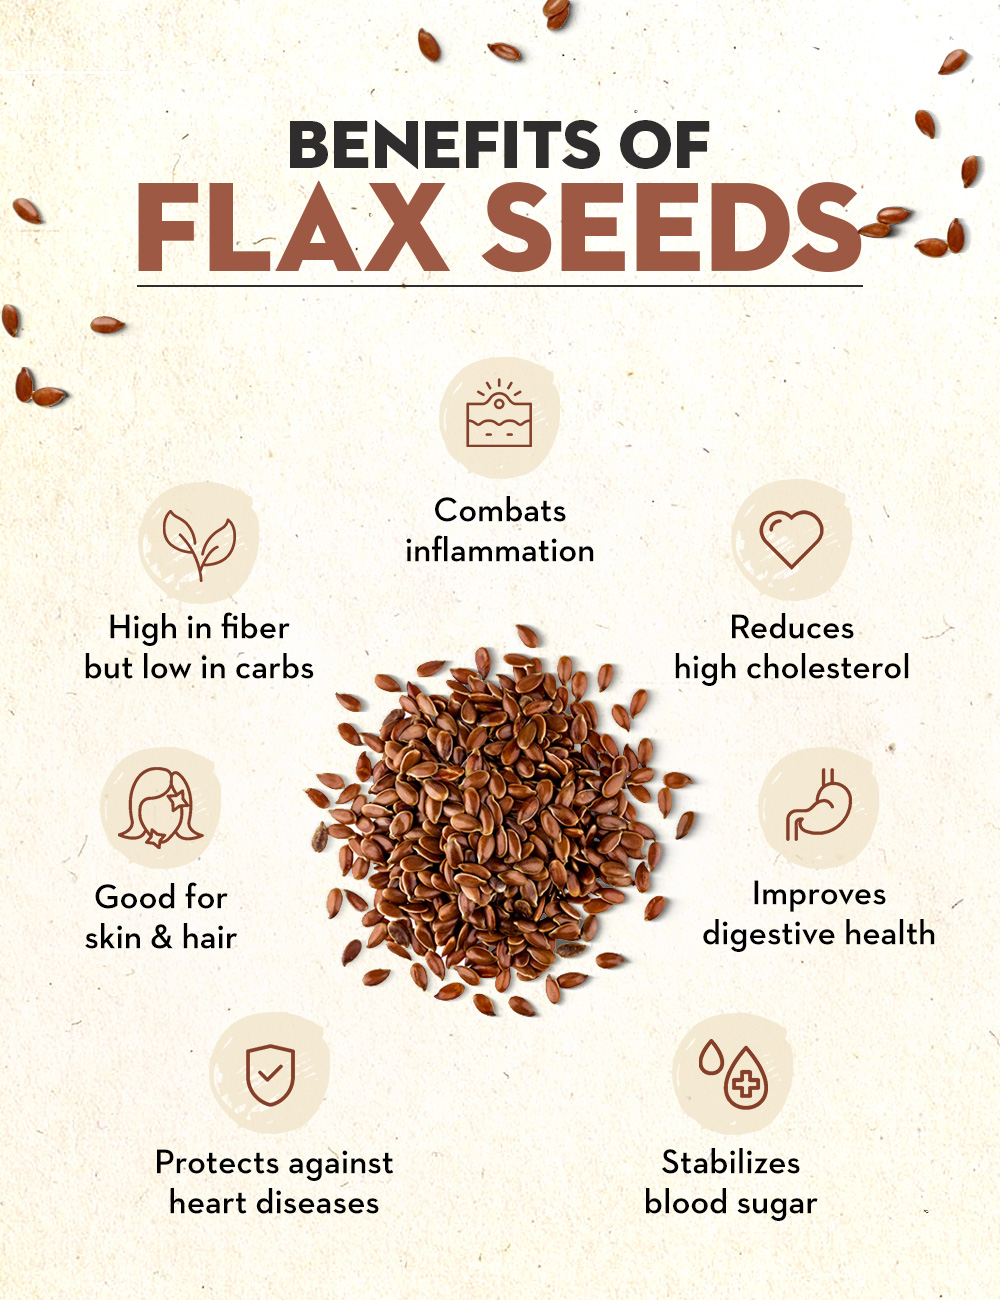 Benefits Of Flax Seeds For Healthy Skin And Hair | Flax Seeds For Skin And  Hair: अलसी के बीज का रोजाना कैसे करें सेवन, जानें इसके जबरदस्त फायदे